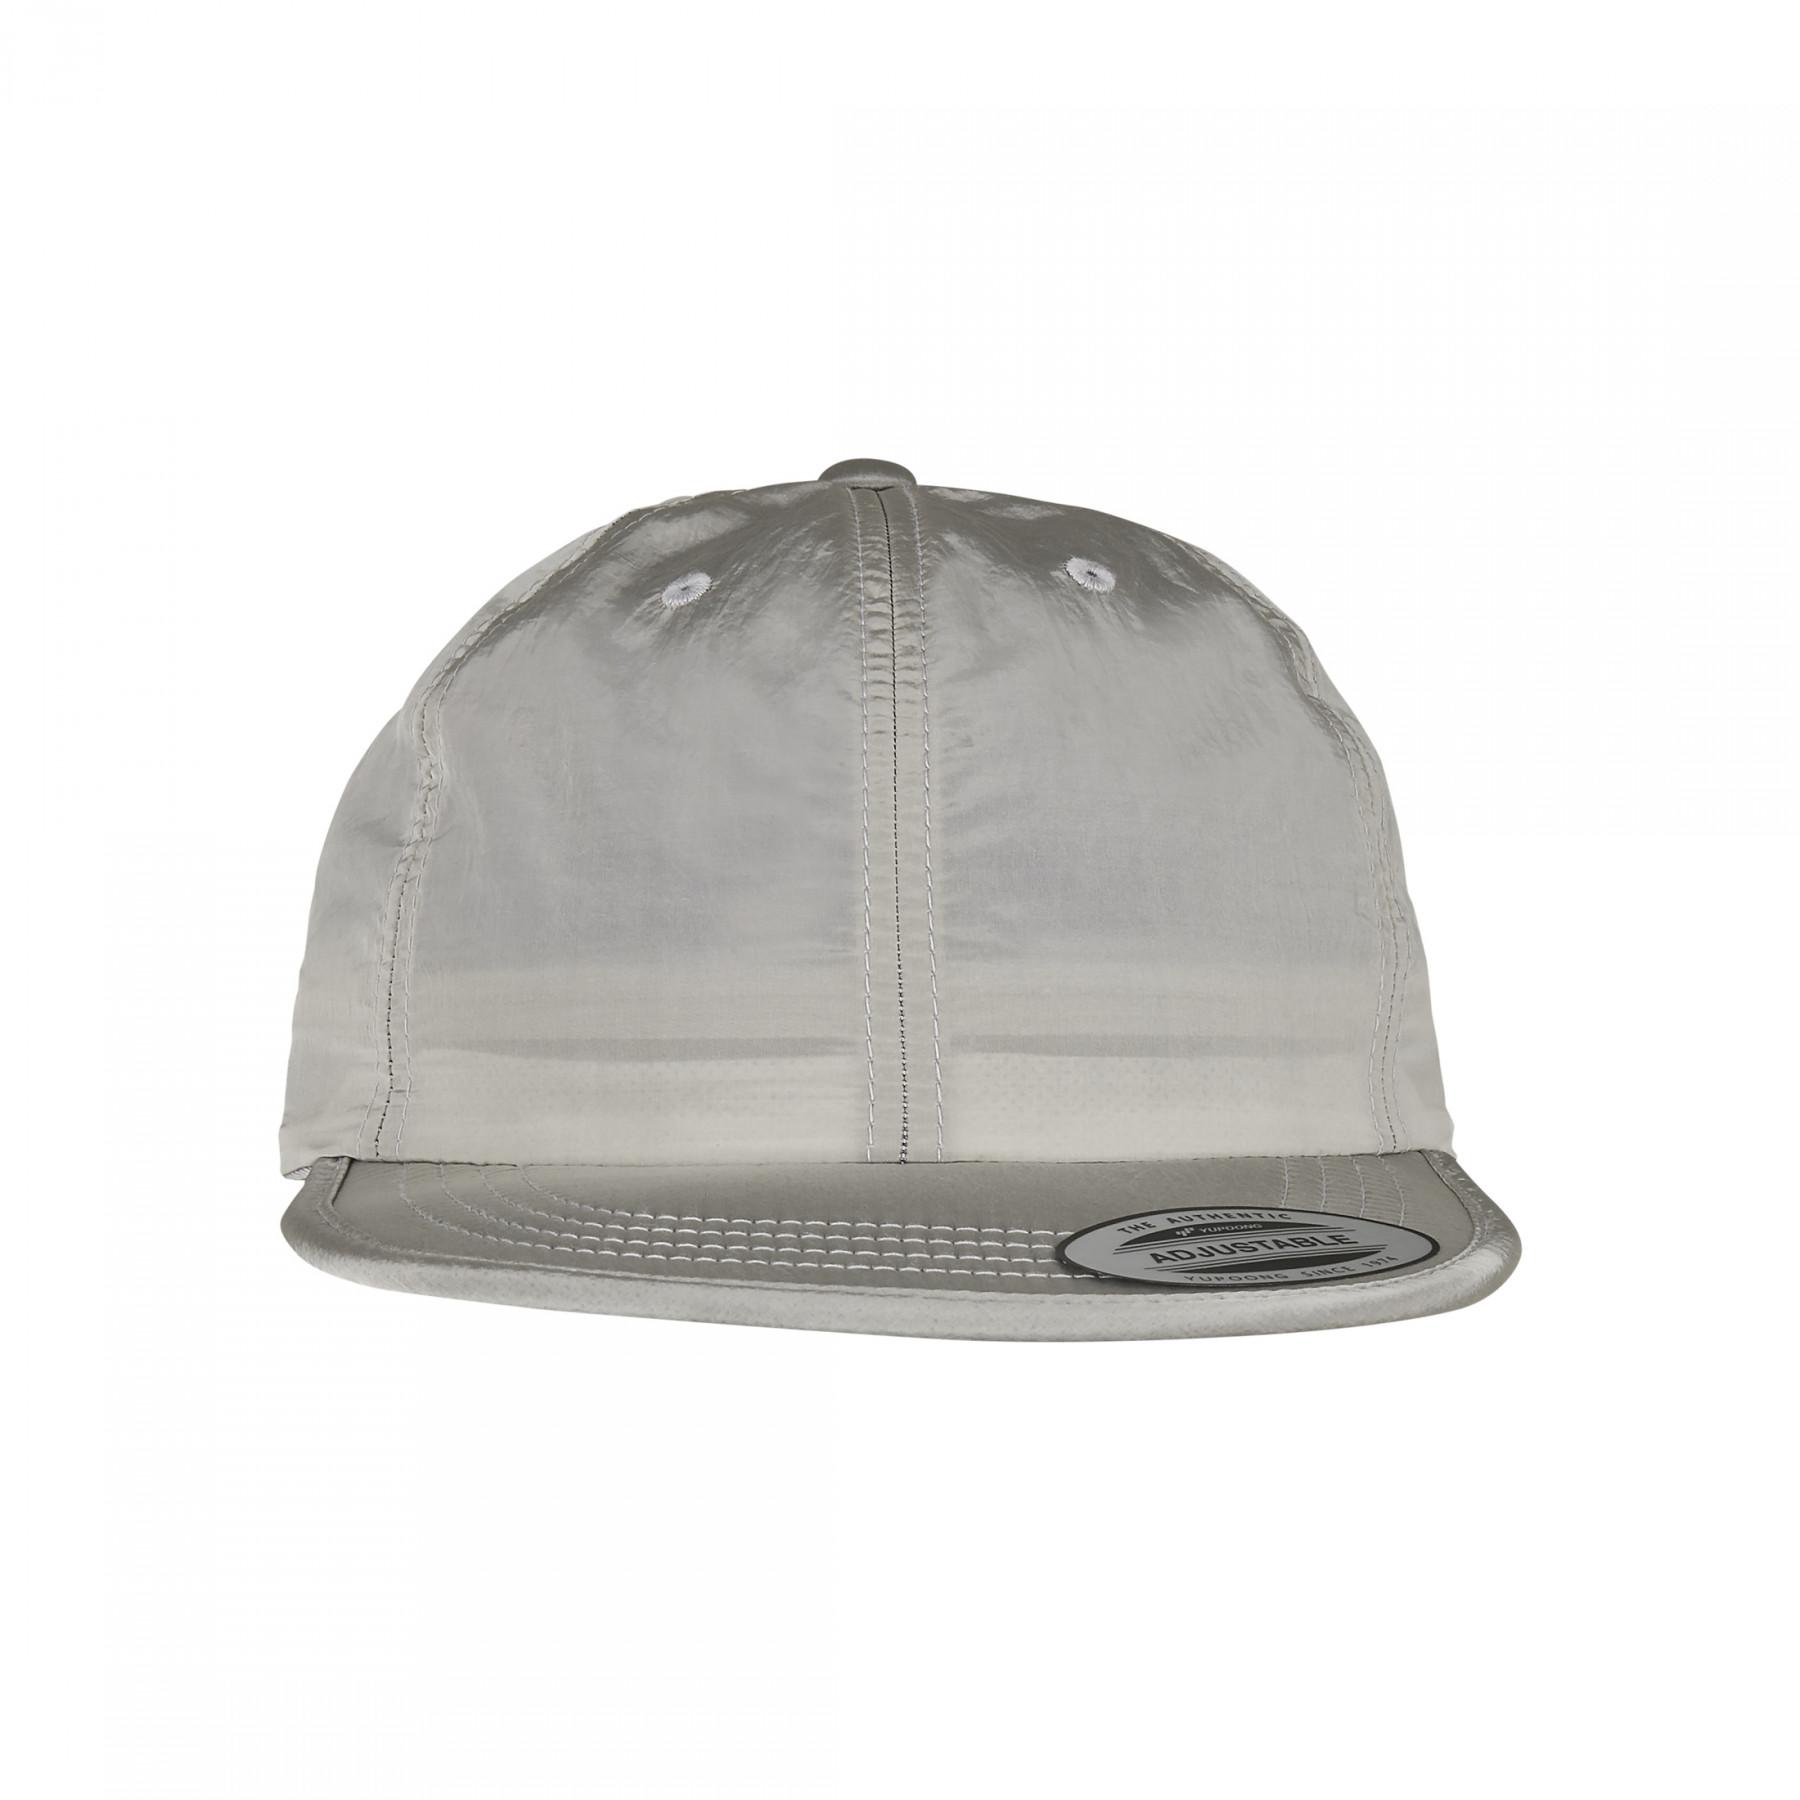 Urban Classic adjustable nylon cap